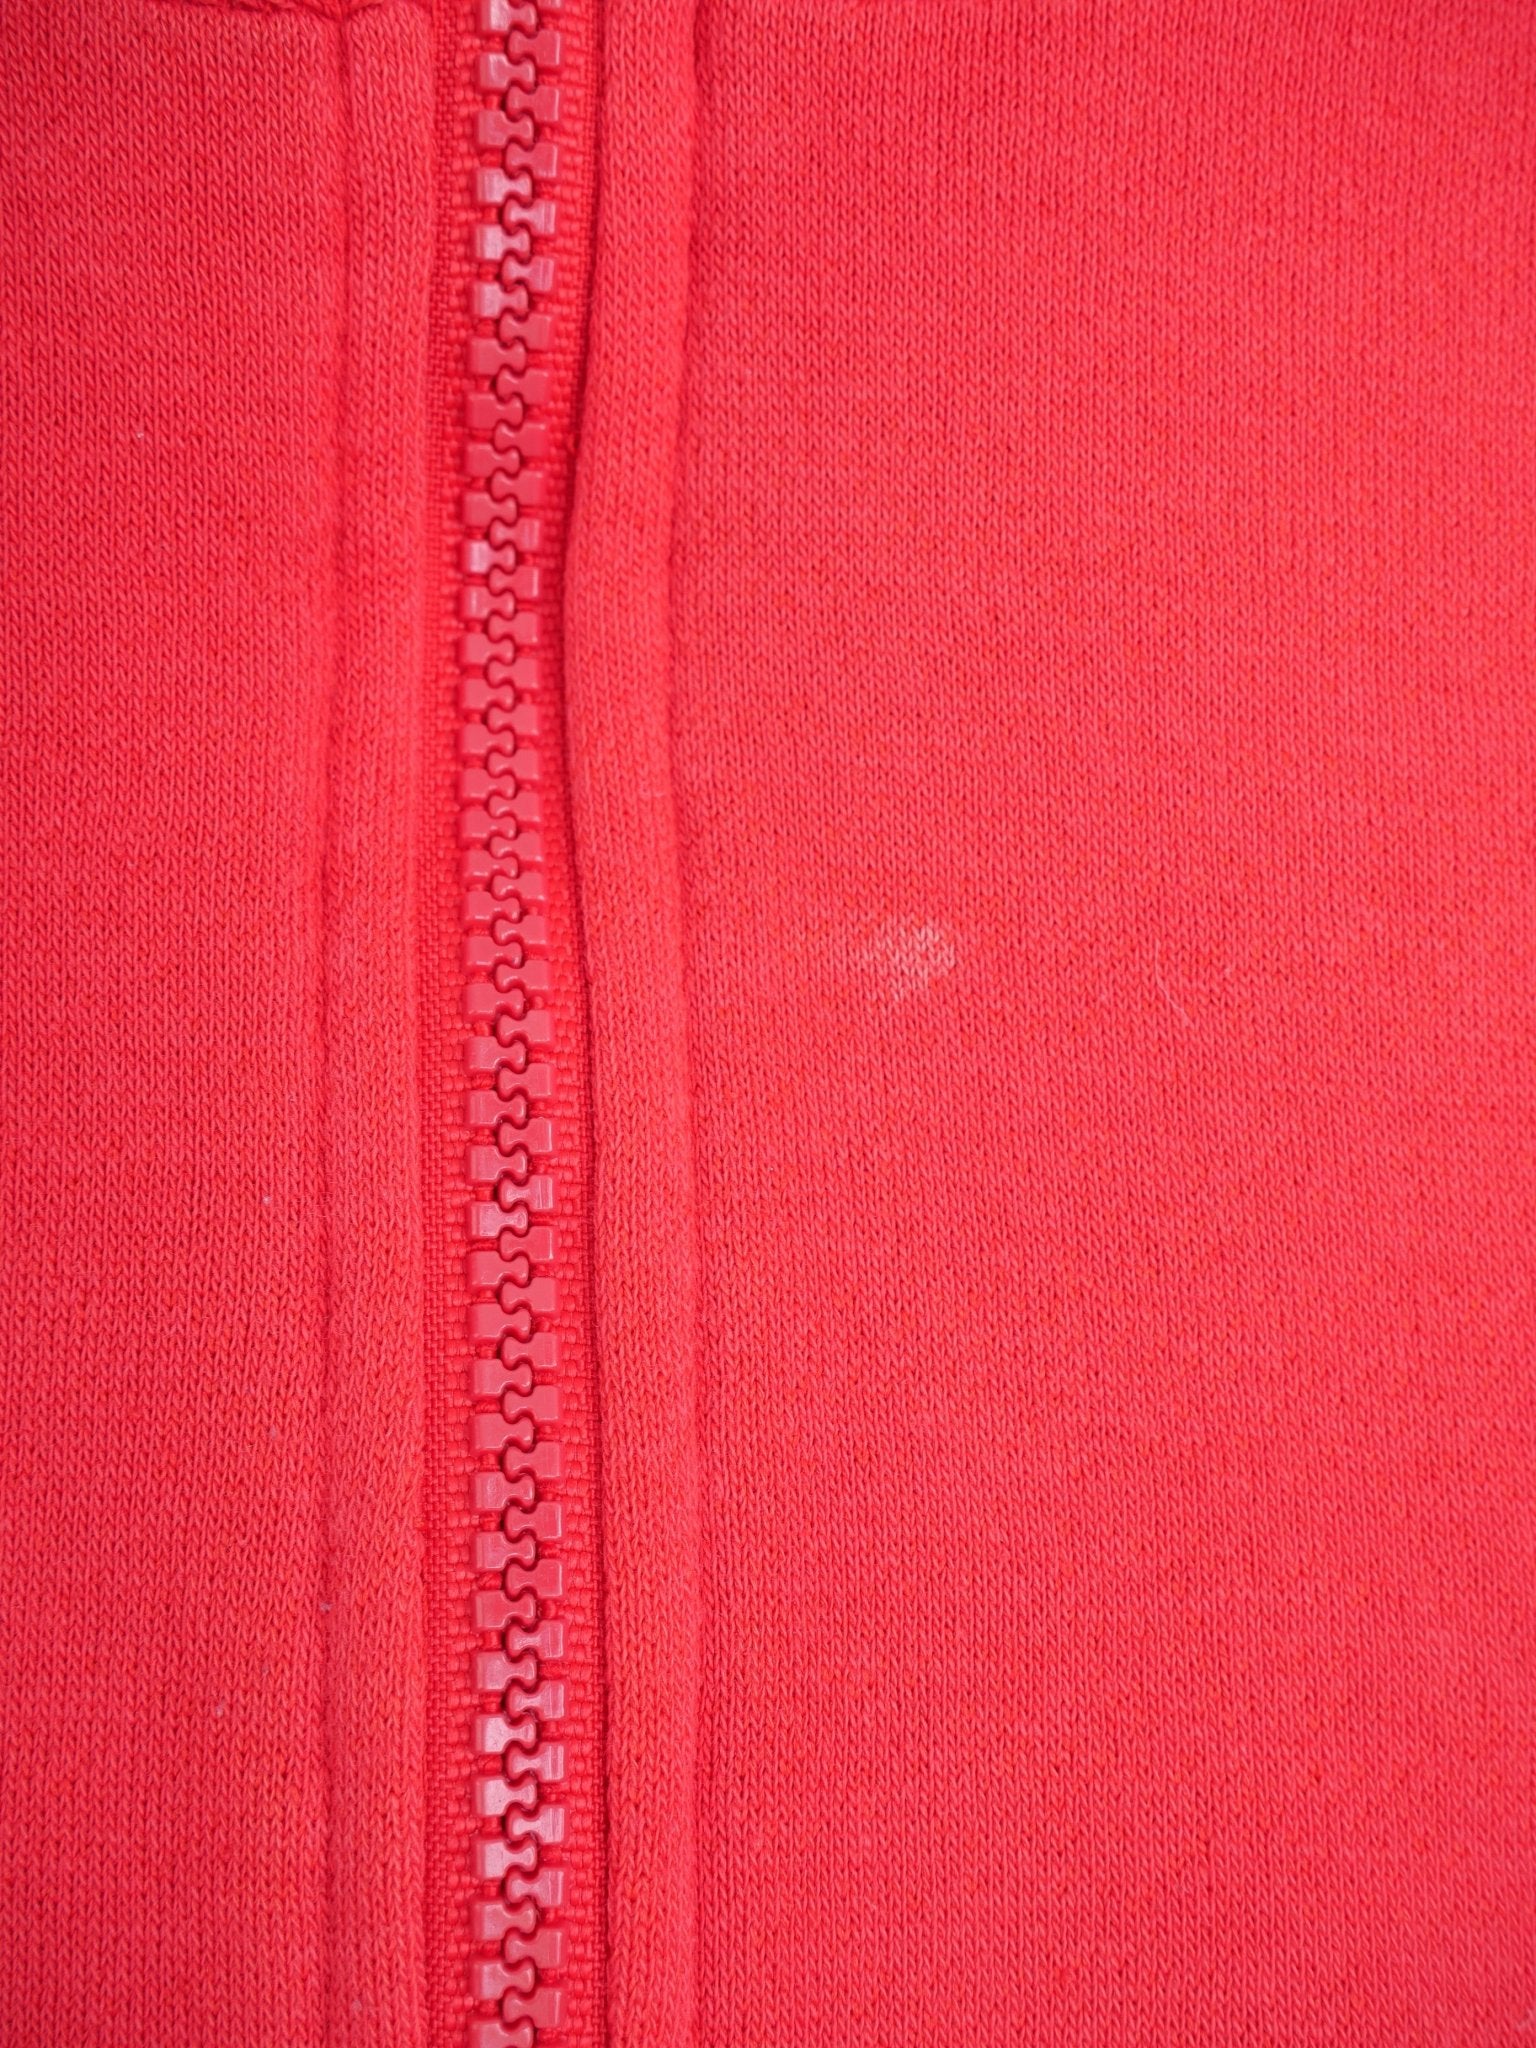 Sergio Tecchini embroidered Logo red Half Zip Sweater - Peeces